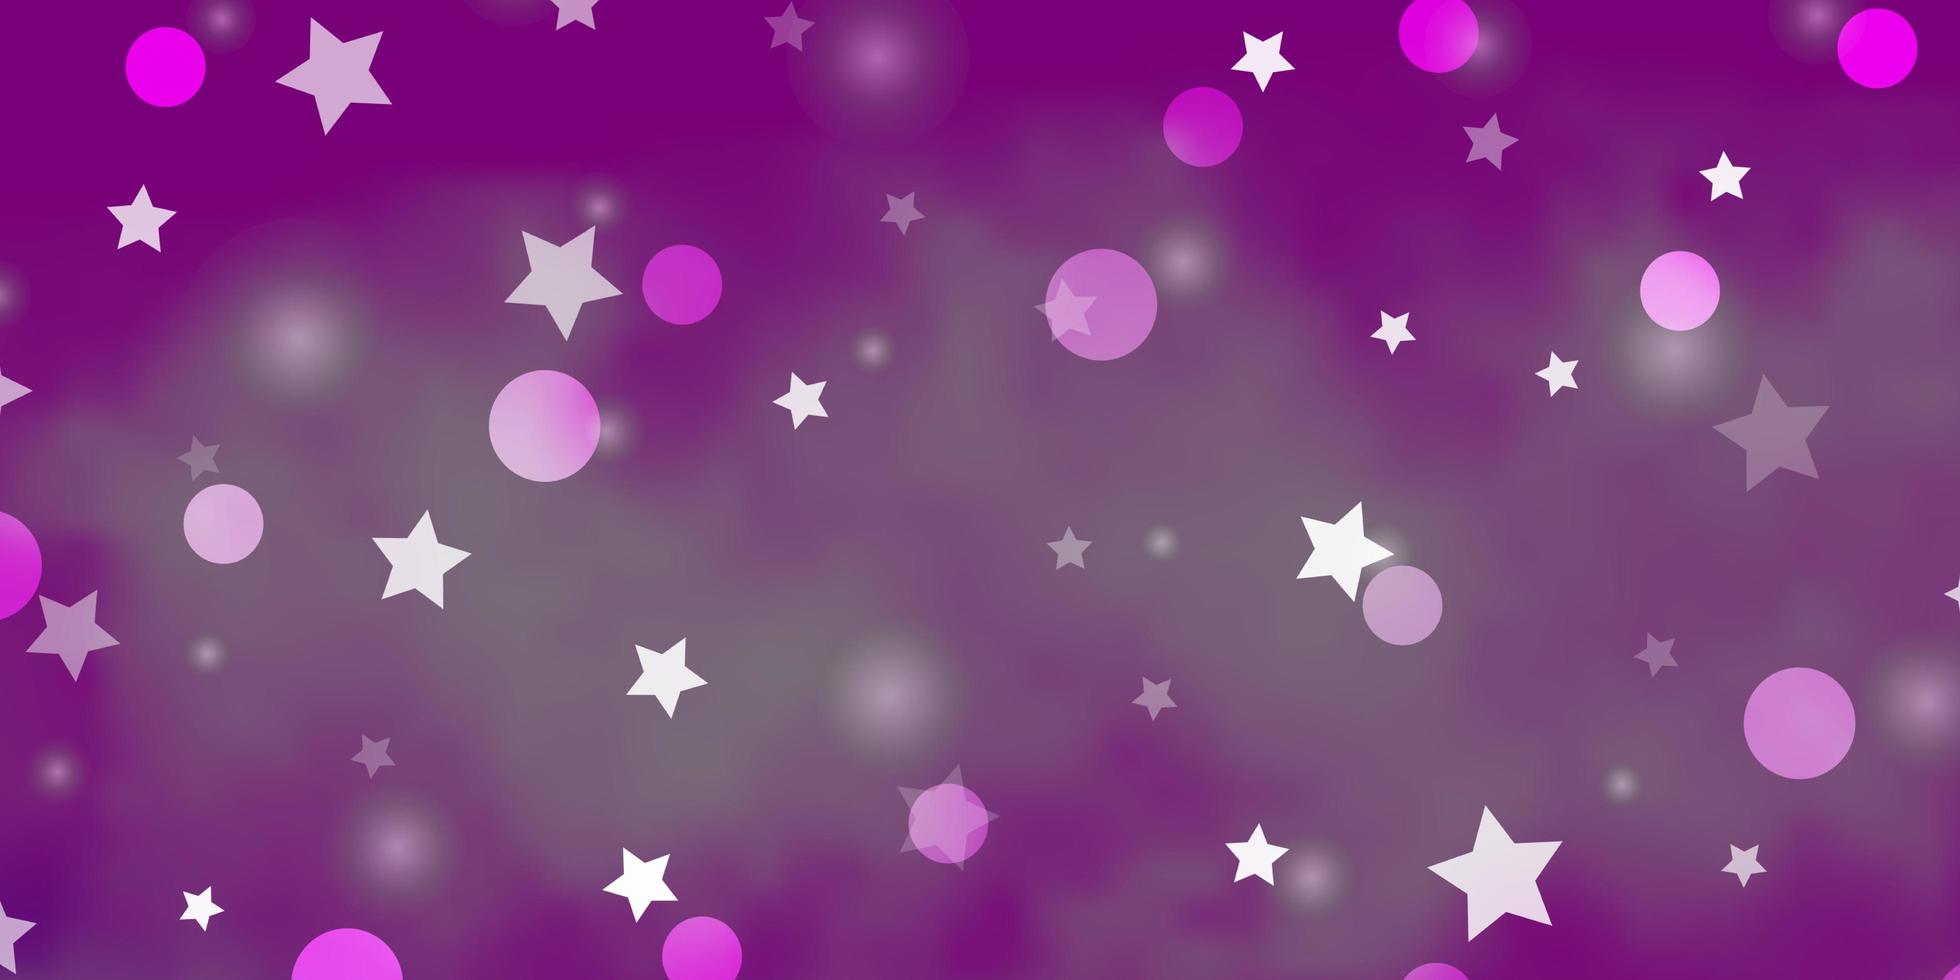 sfondo vettoriale rosa chiaro con cerchi stelle disegno astratto in stile sfumato con bolle stelle trama per tende tapparelle